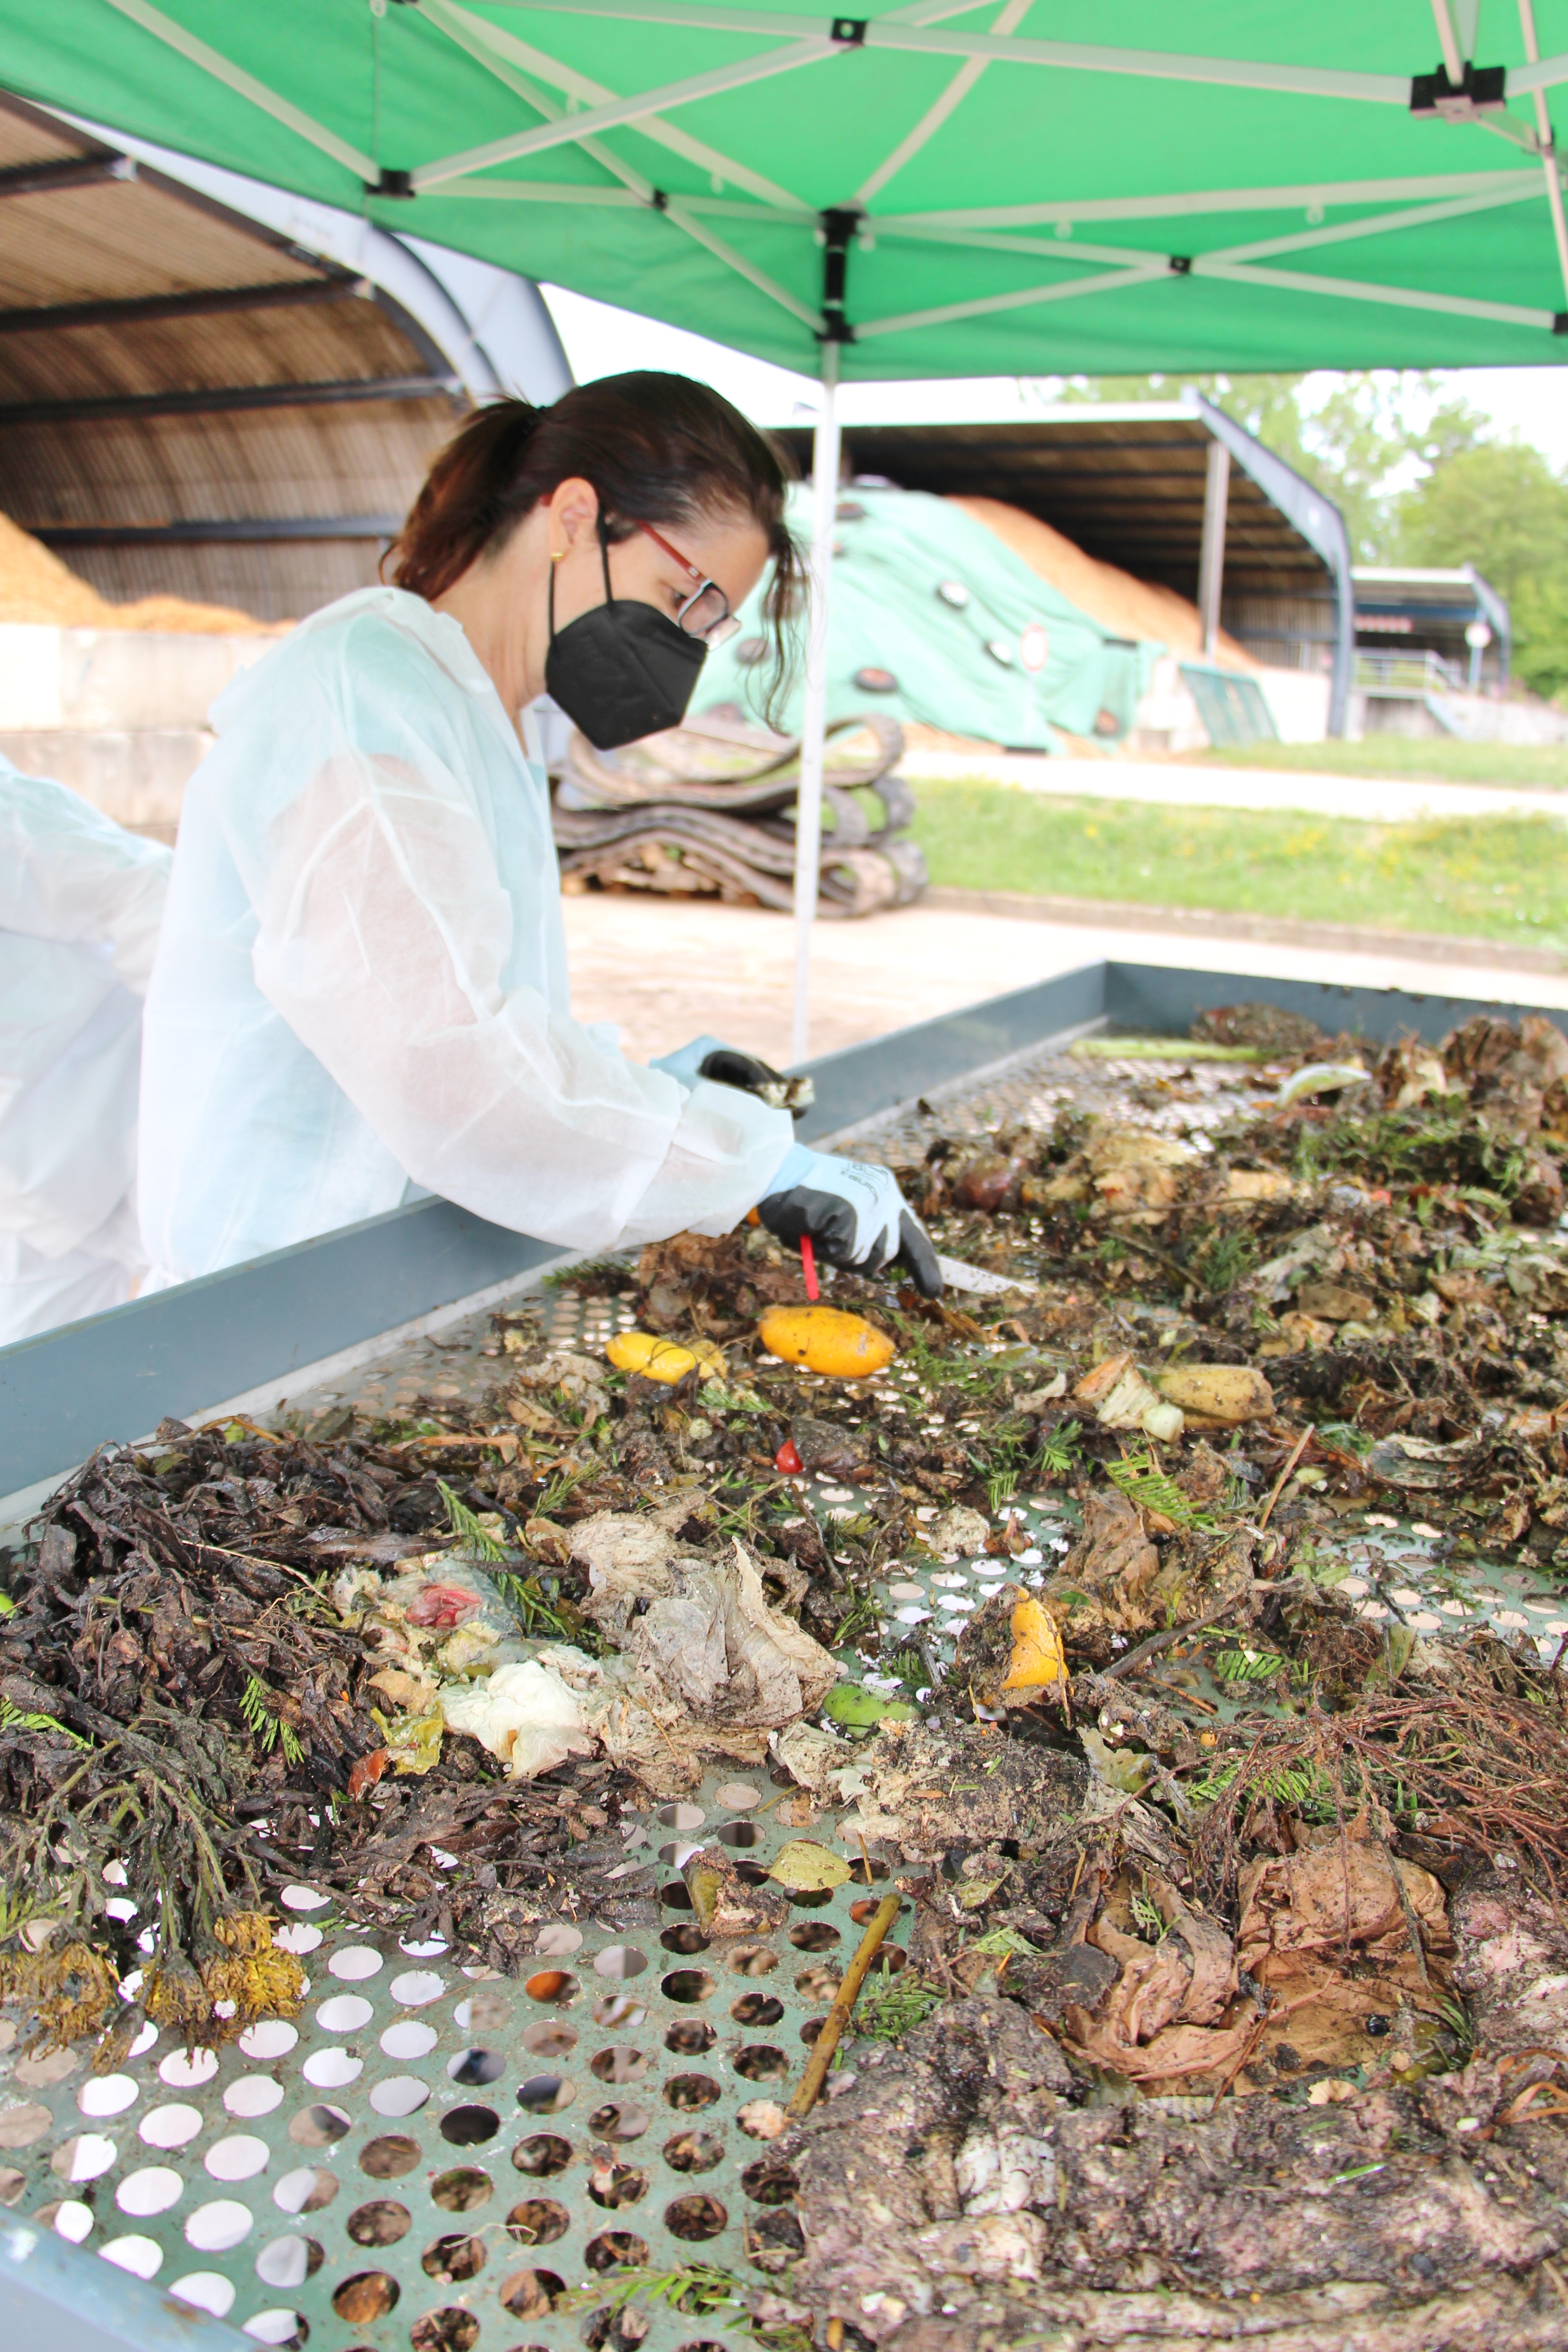 
    
            
                    Sortierung von Bioabfällen
                
        
